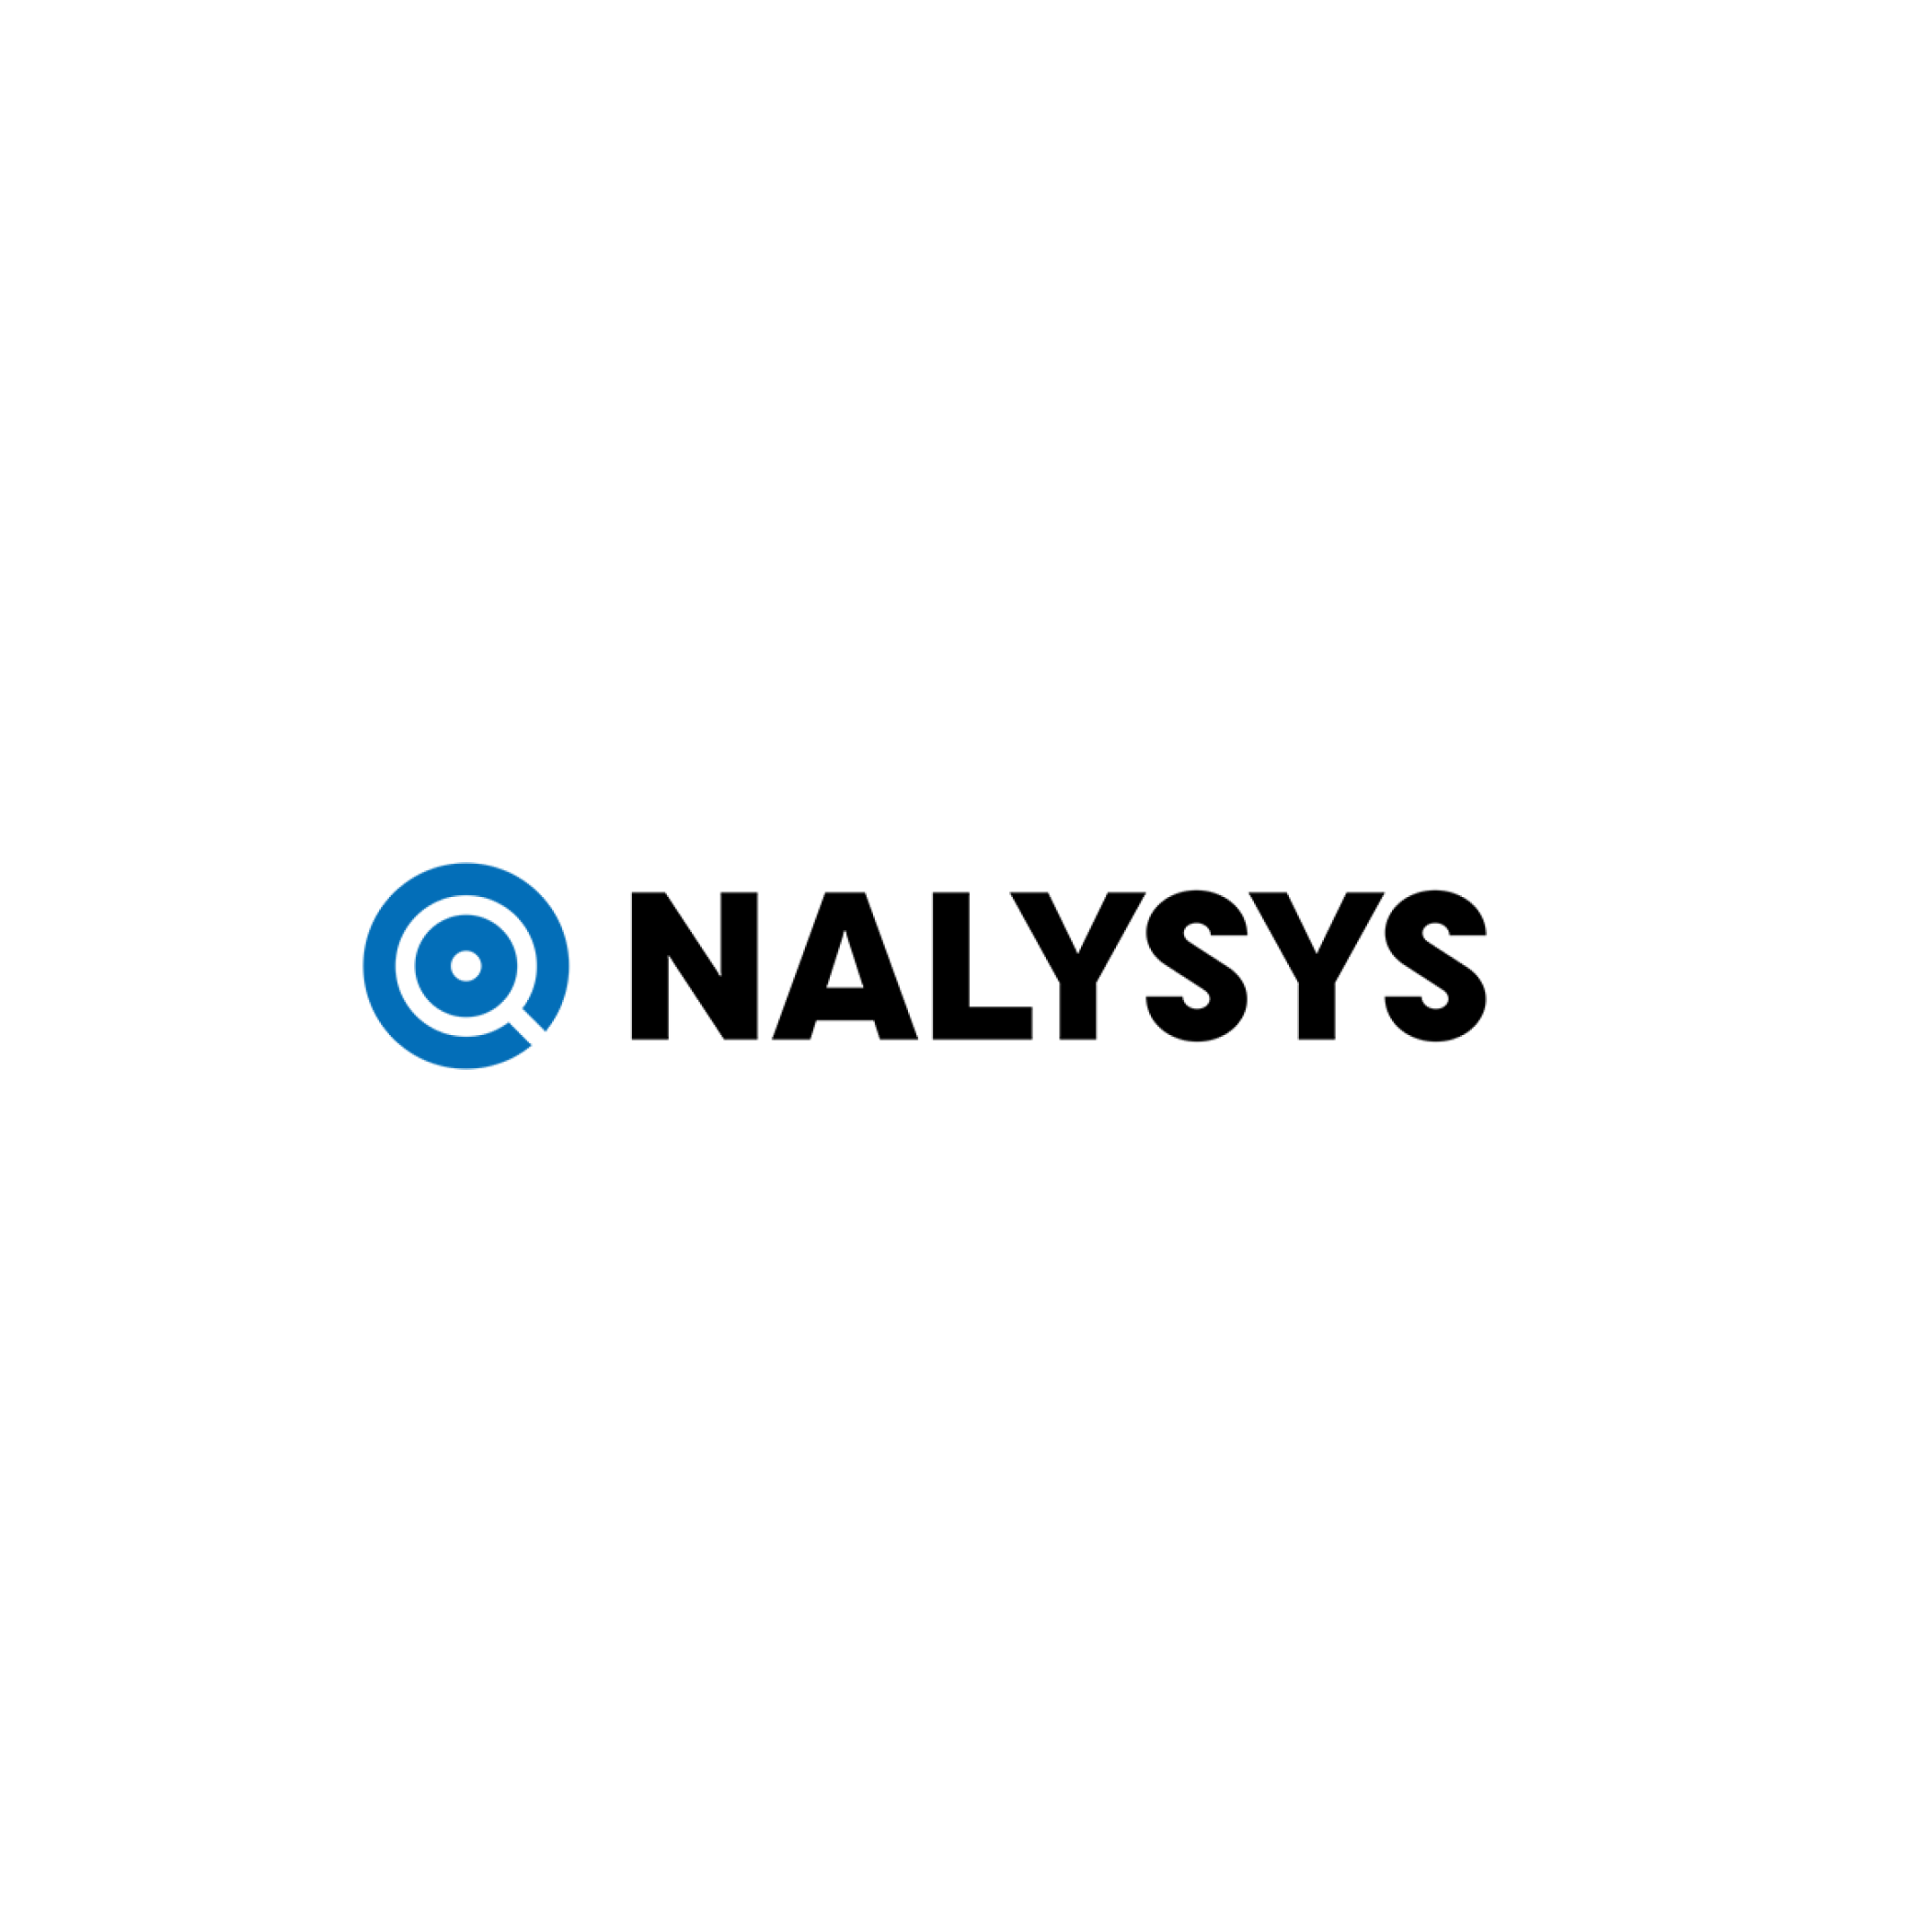 NALYSYS ロゴ